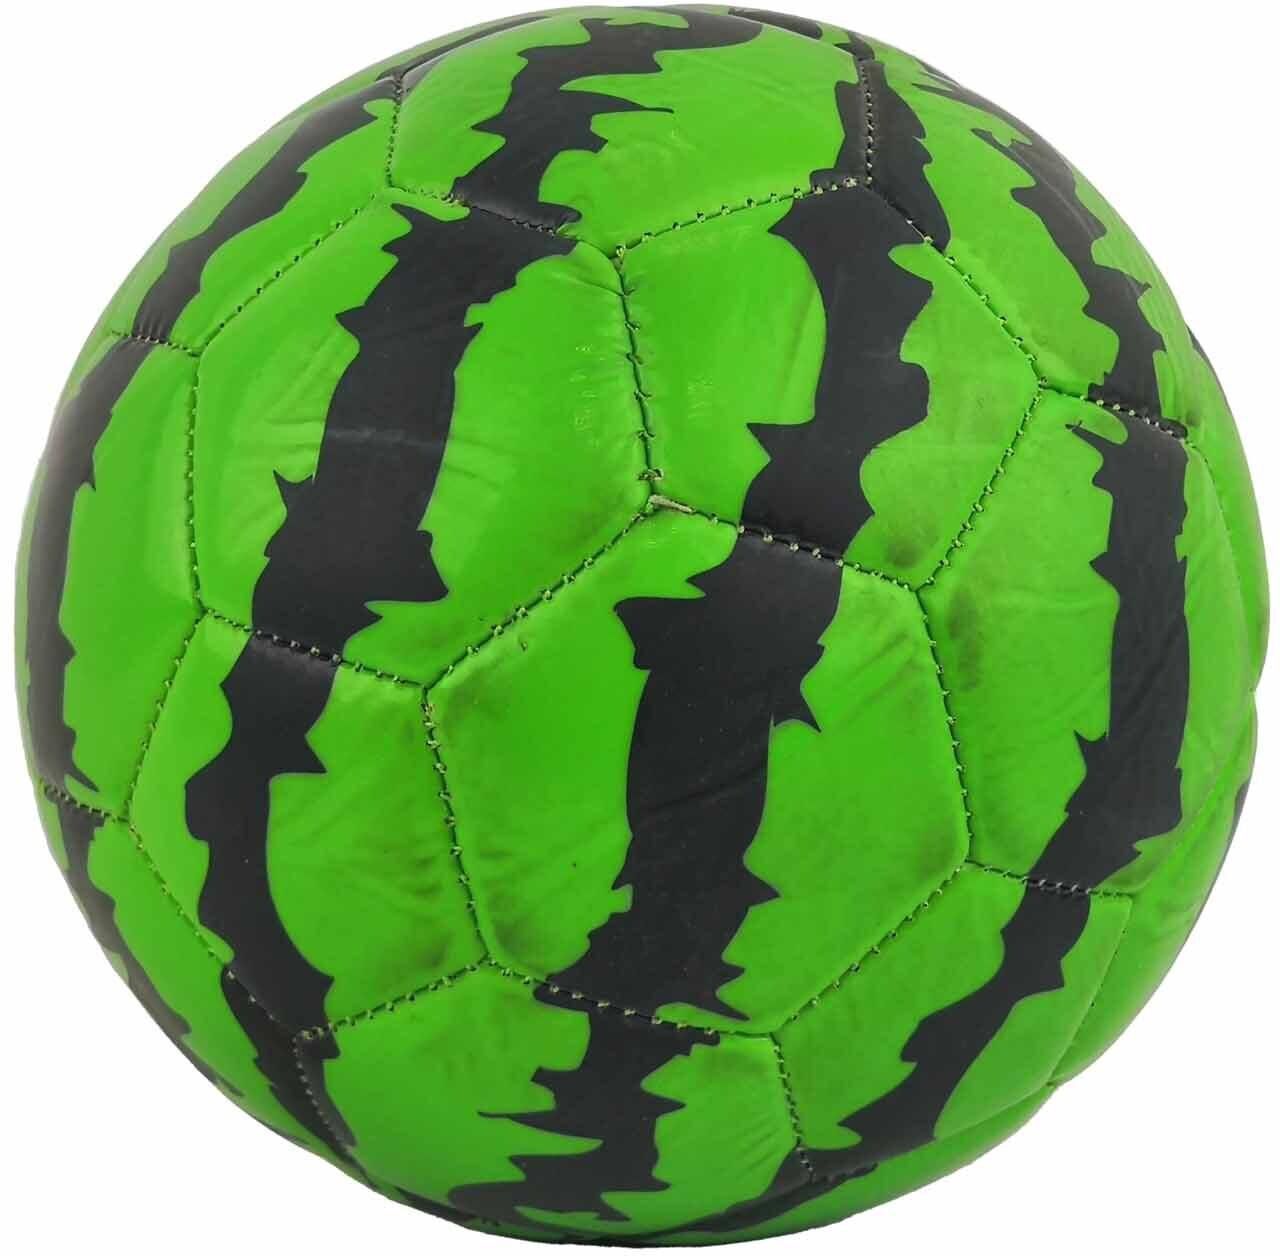 Waterproof Soccer Ball - Size 2